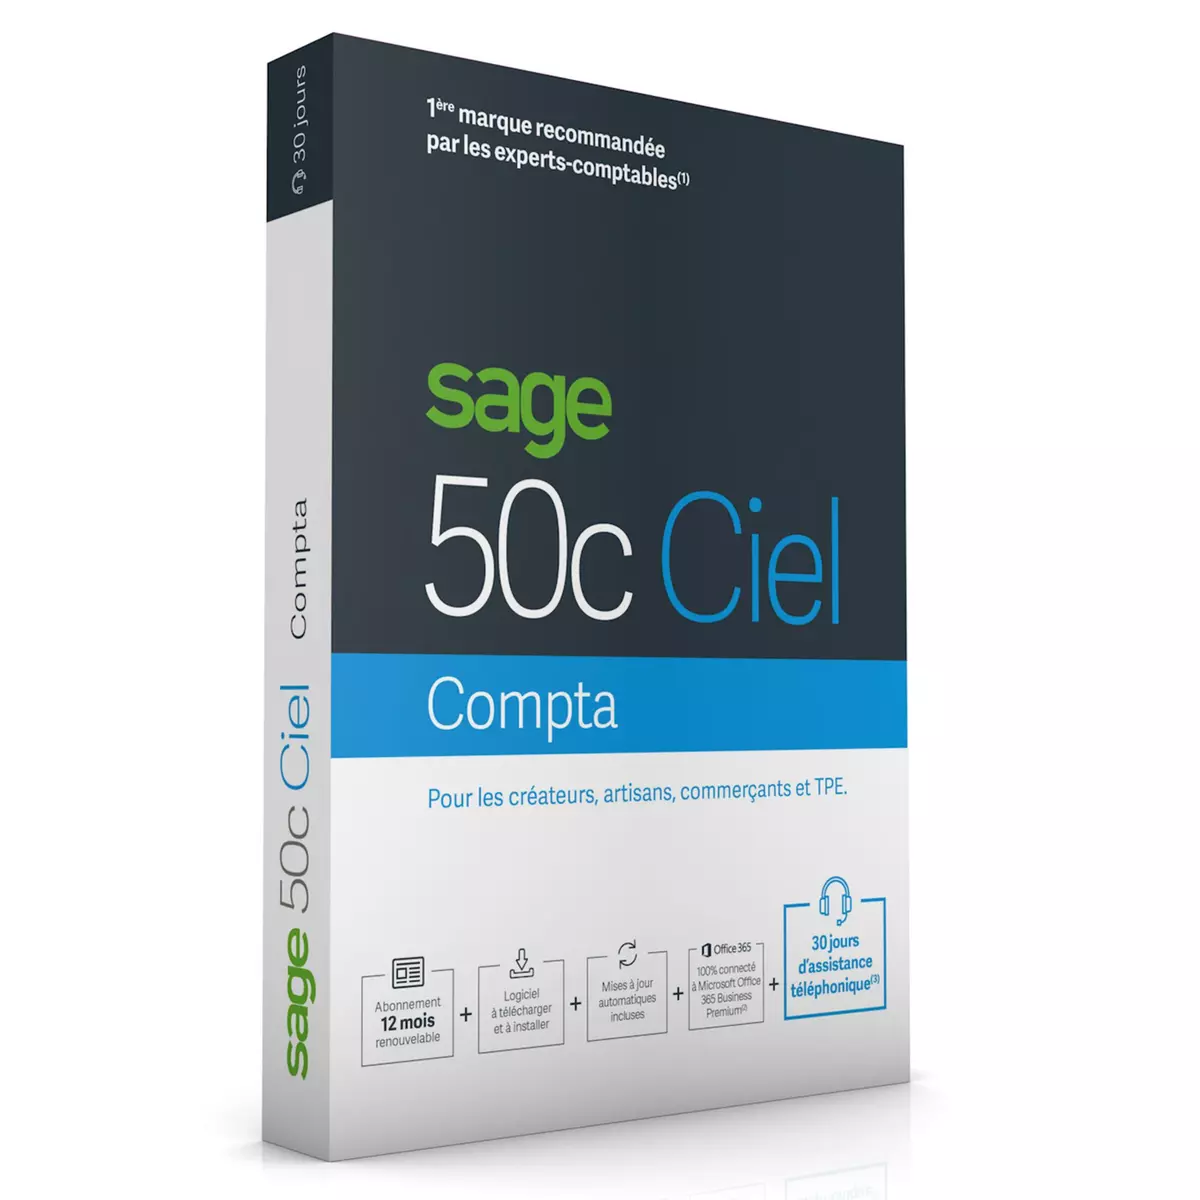 Sage Ciel Compta 50c - 30 jours d'assistance